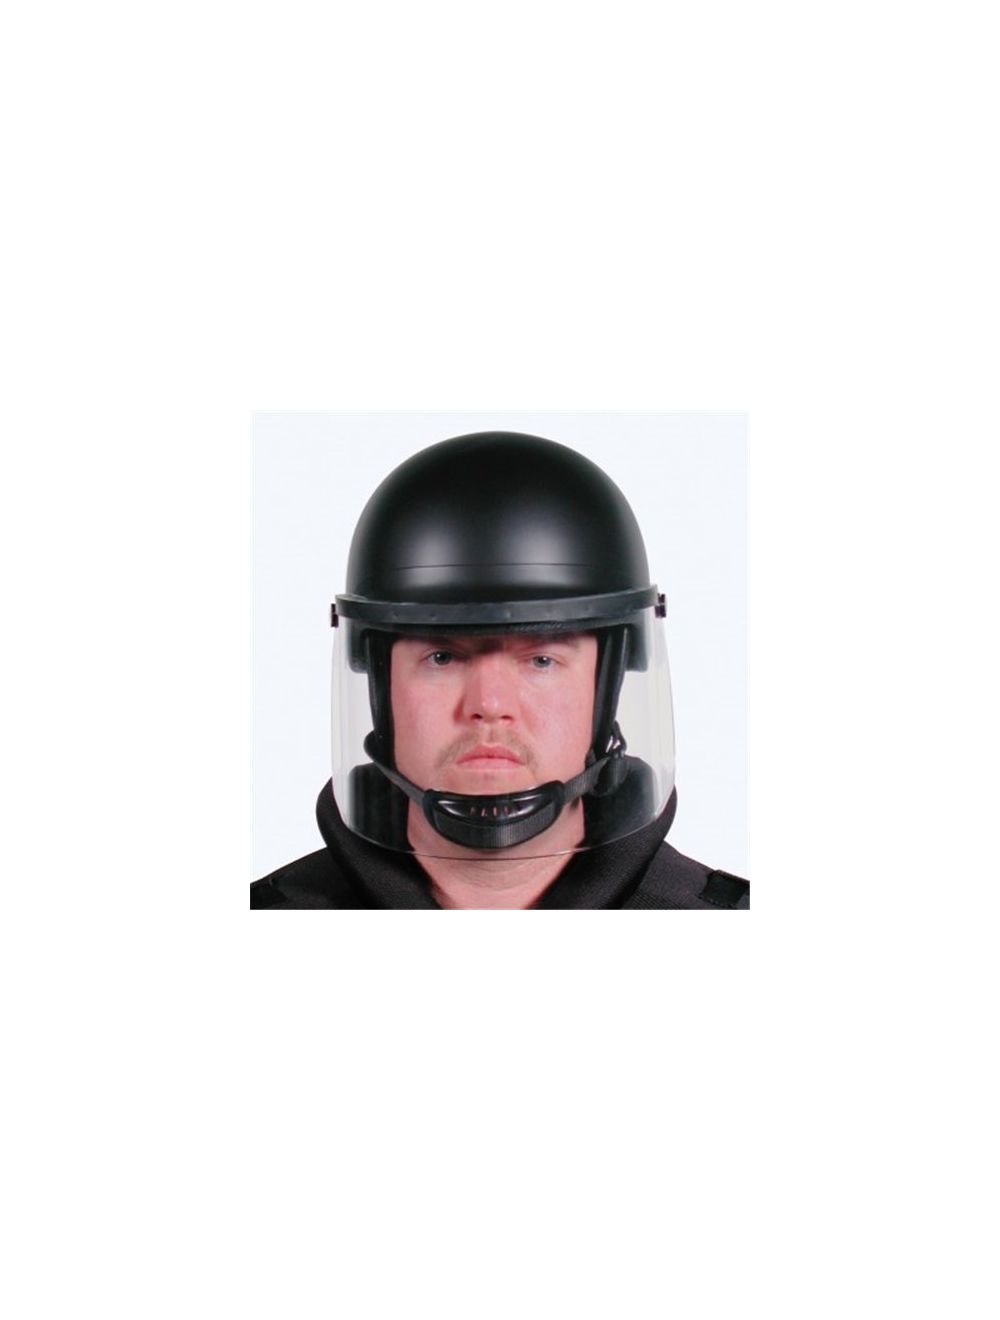 906 Series TacElite EPR Polycarbonate Alloy Riot Helmet